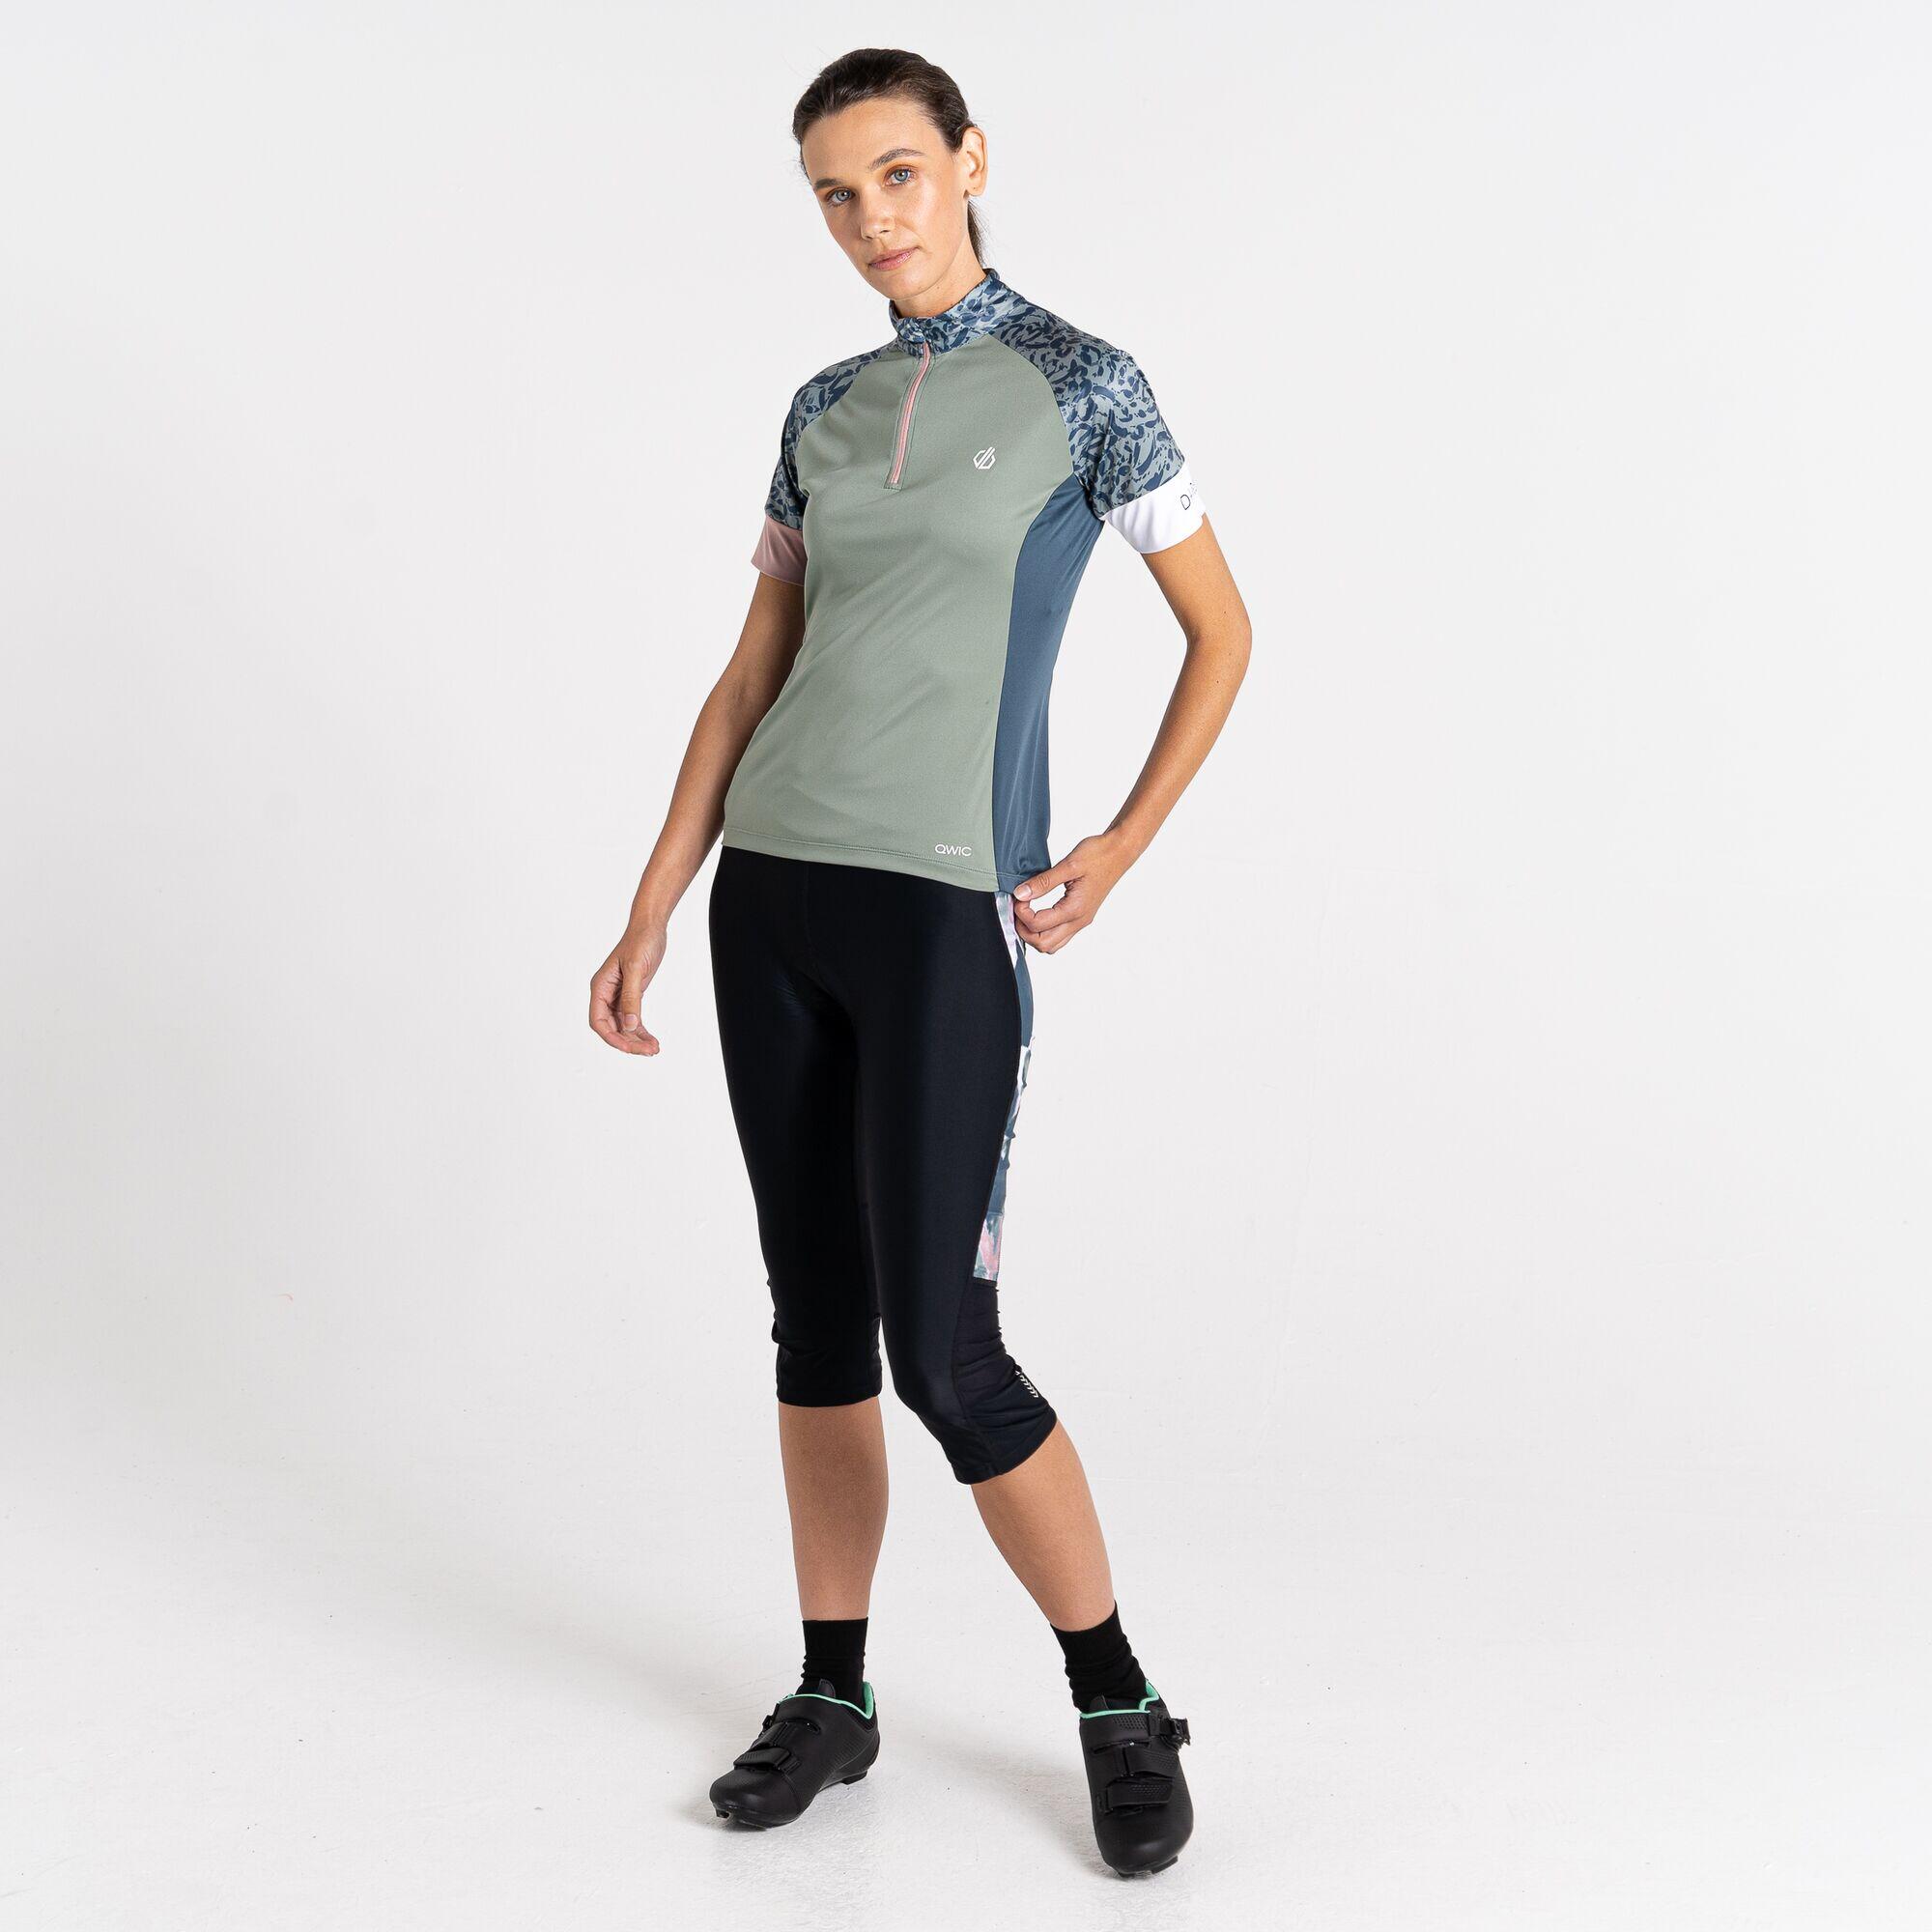 Follow Through Women's Cycling Half Zip, Short Sleeve Jersey 2/7